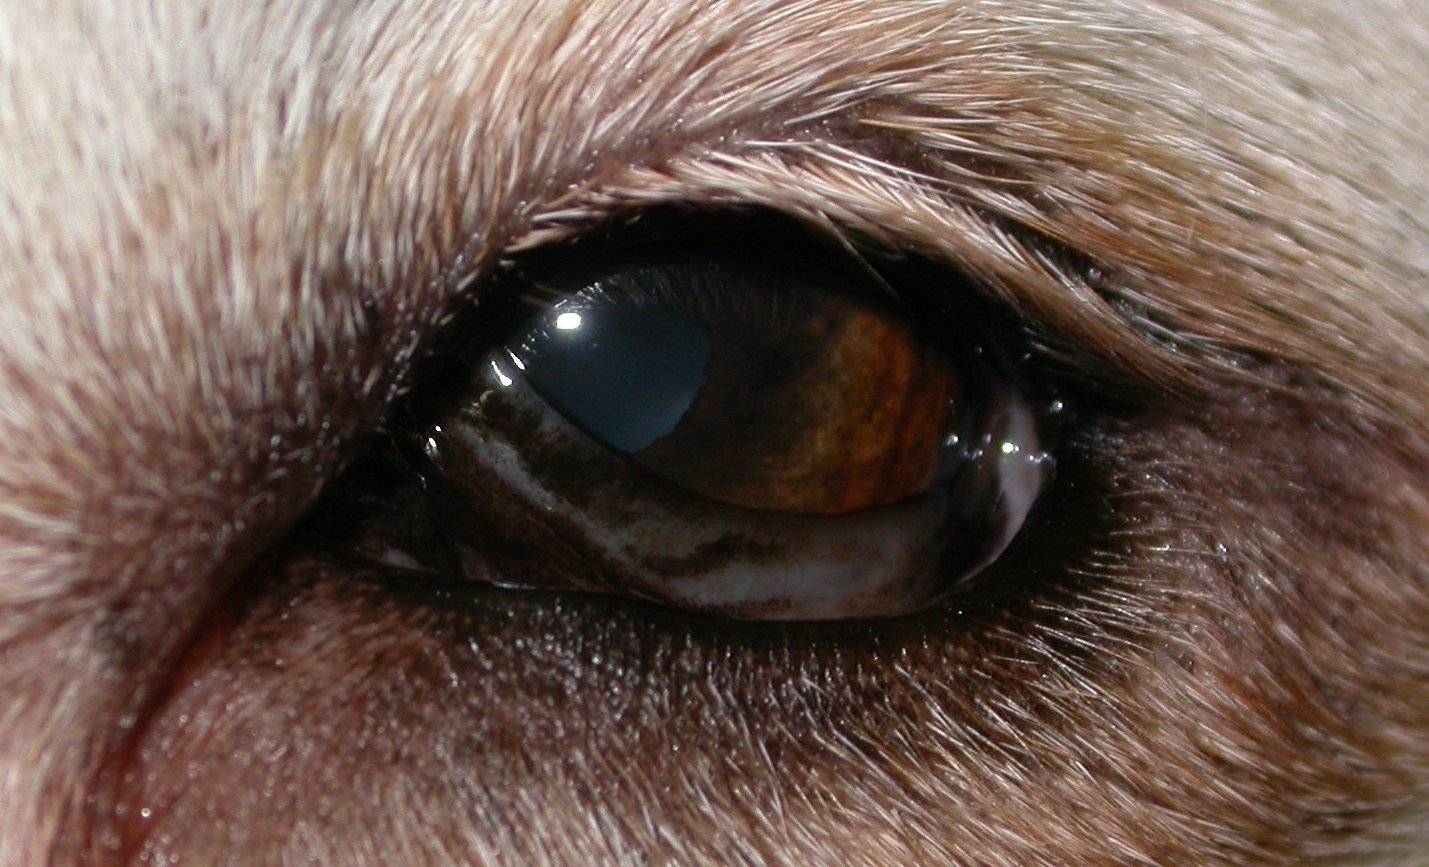 Симптомы и лечение глаукомы у кошек и собак